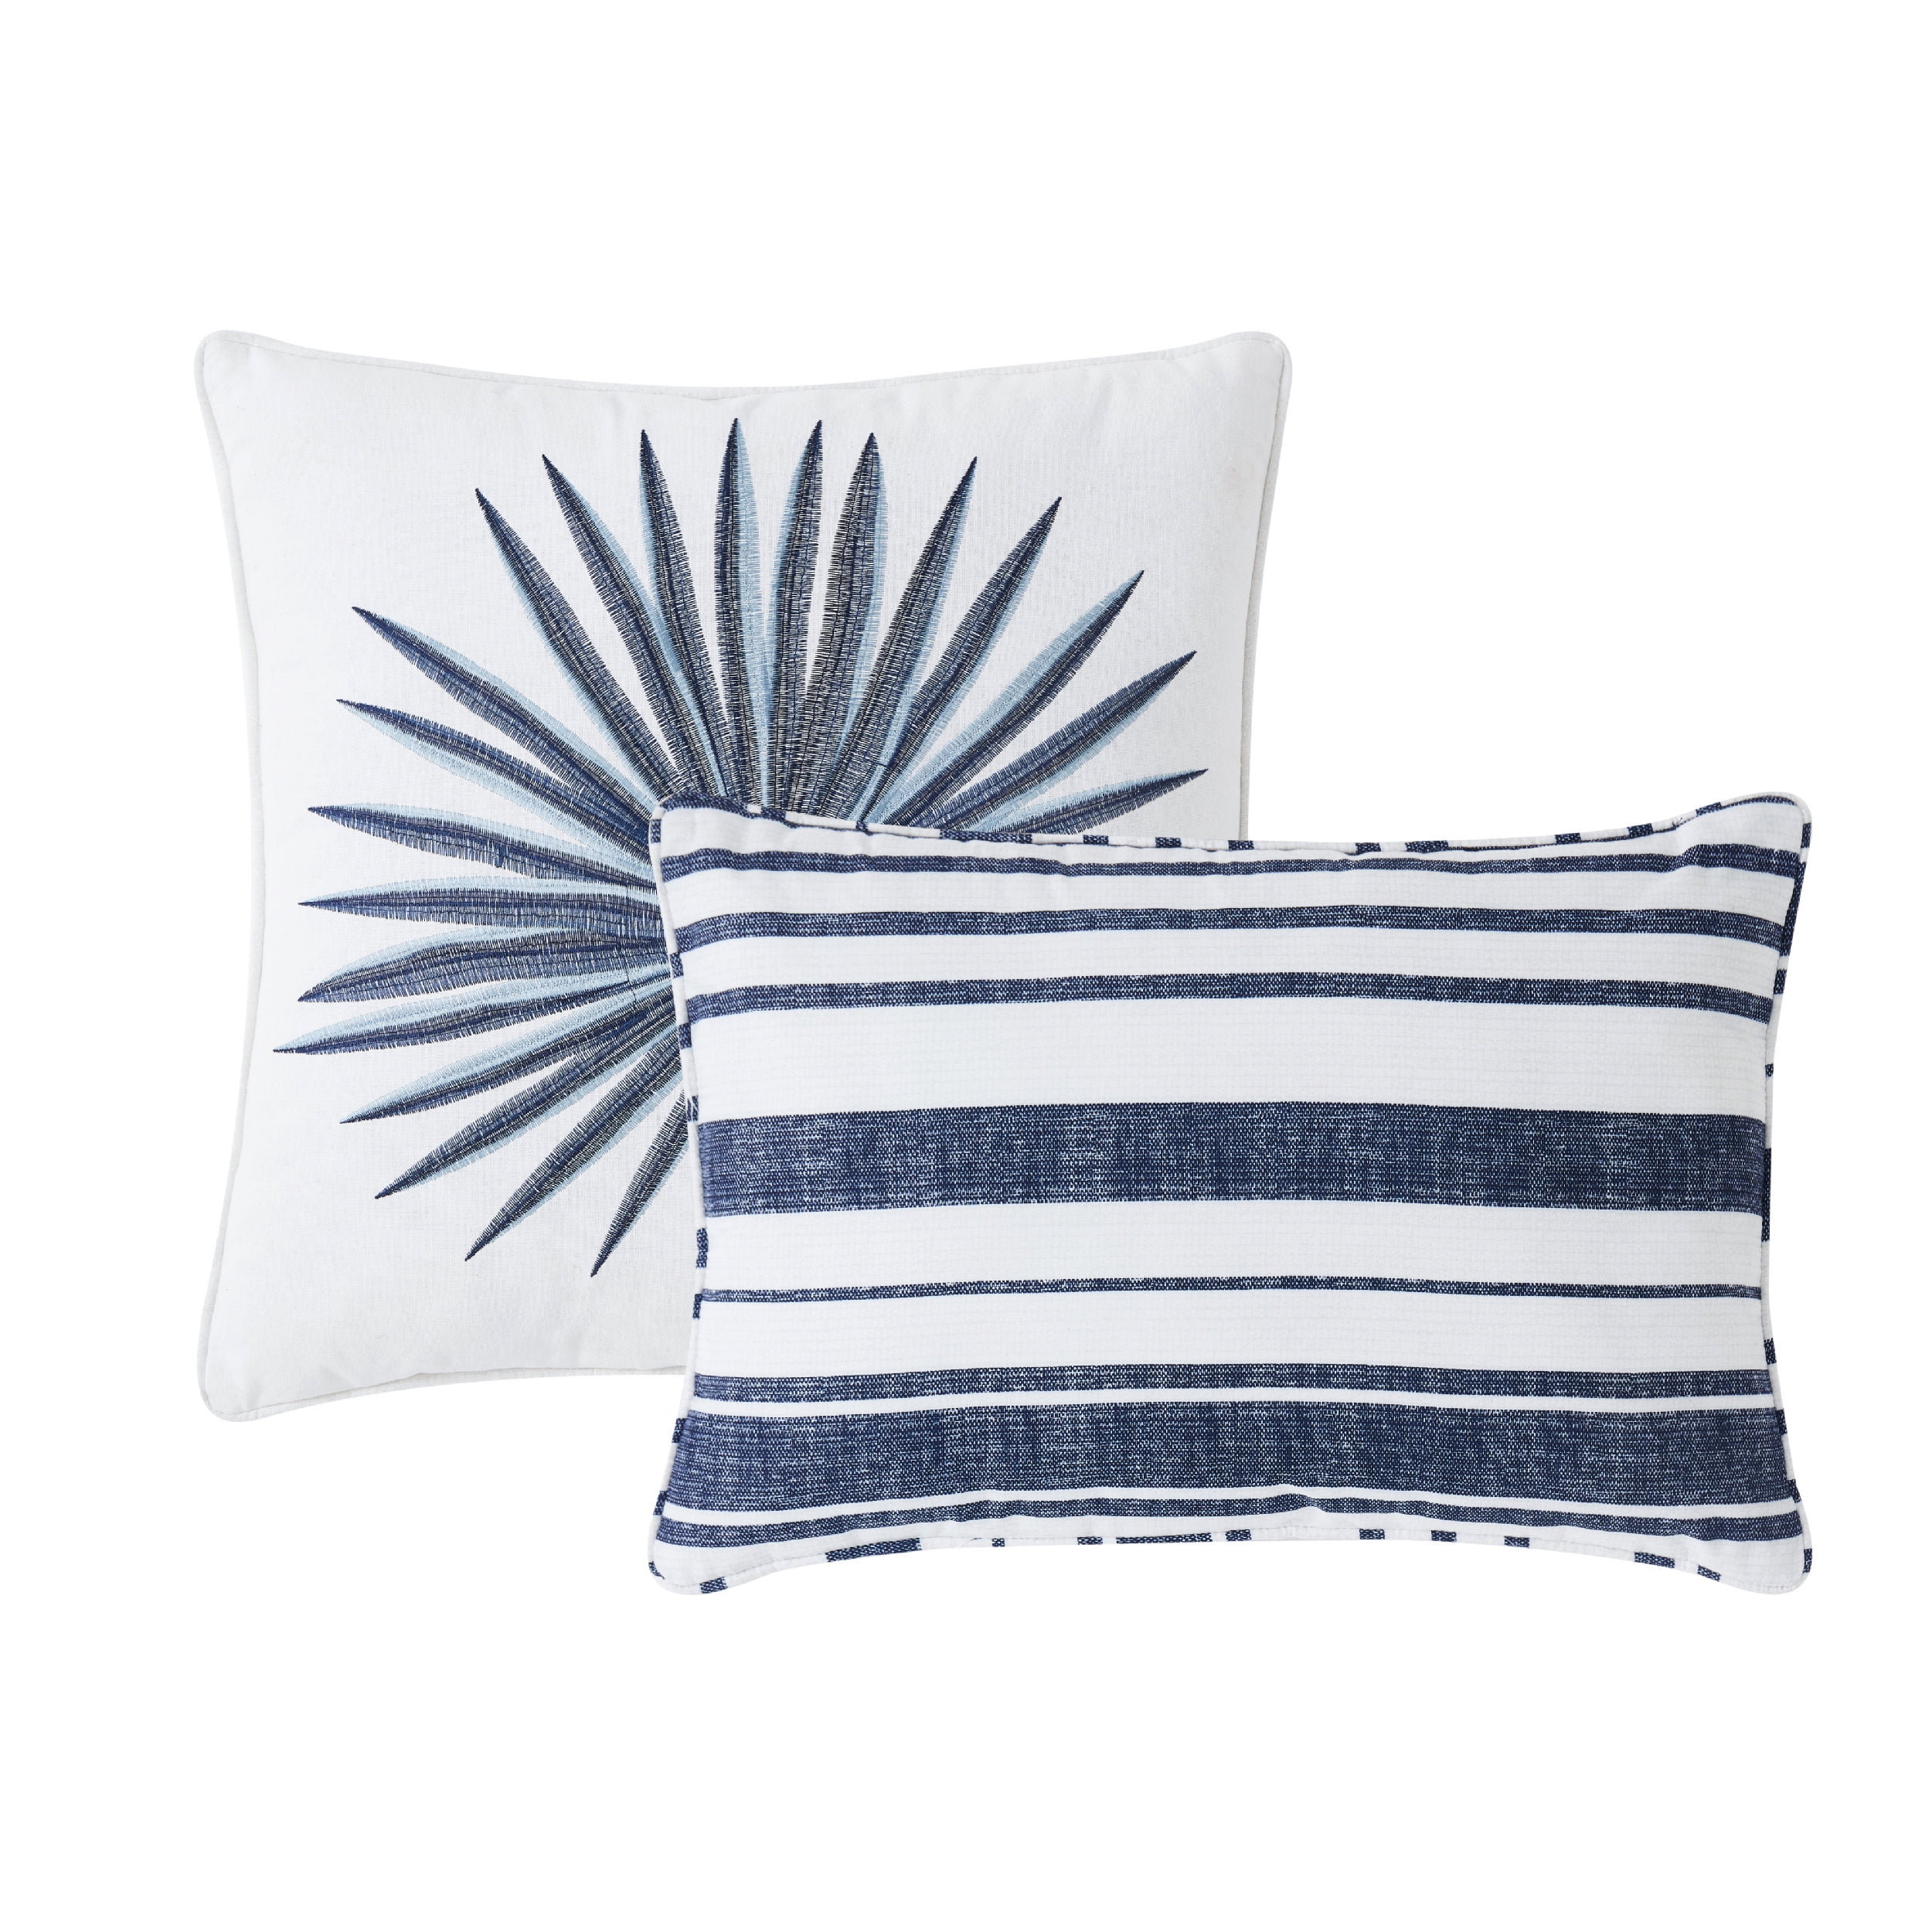 Nautical Pillows, Beach Themed Pillows, Coastal Decor Pillows